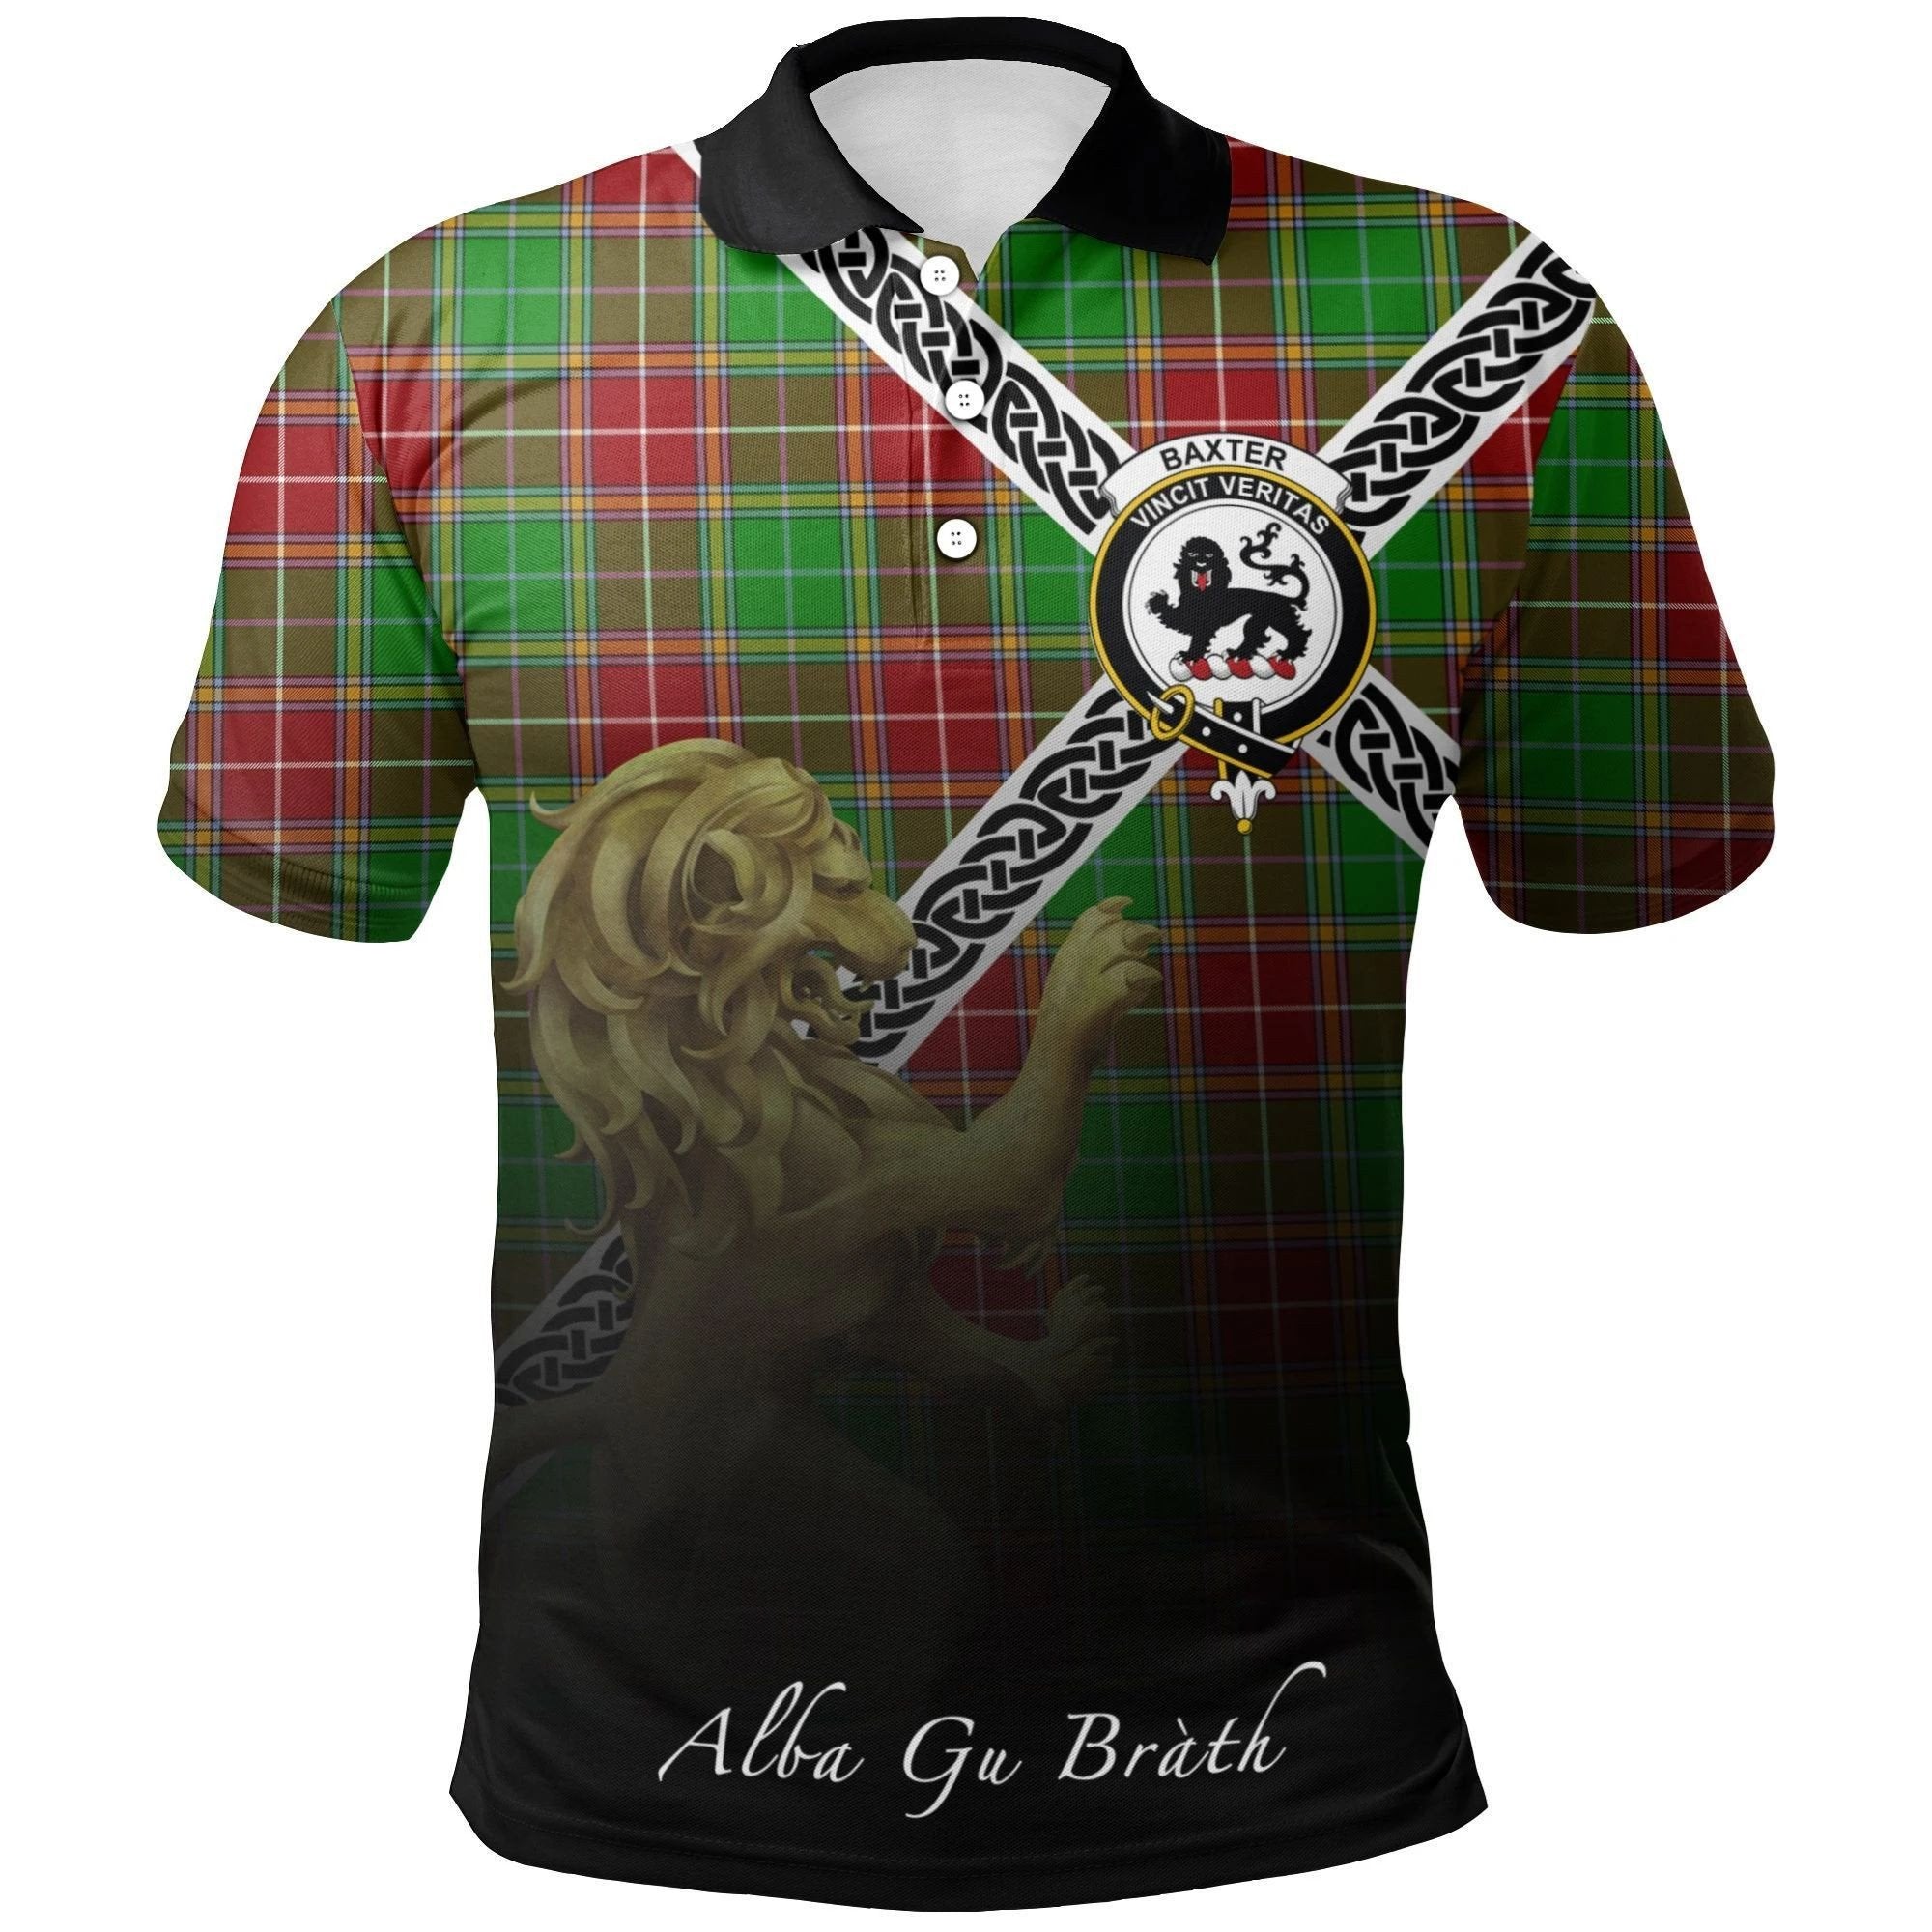 Baxter Modern Clan Polo Shirt, Scottish Tartan Baxter Modern Clans Polo Shirt Celtic Lion Style